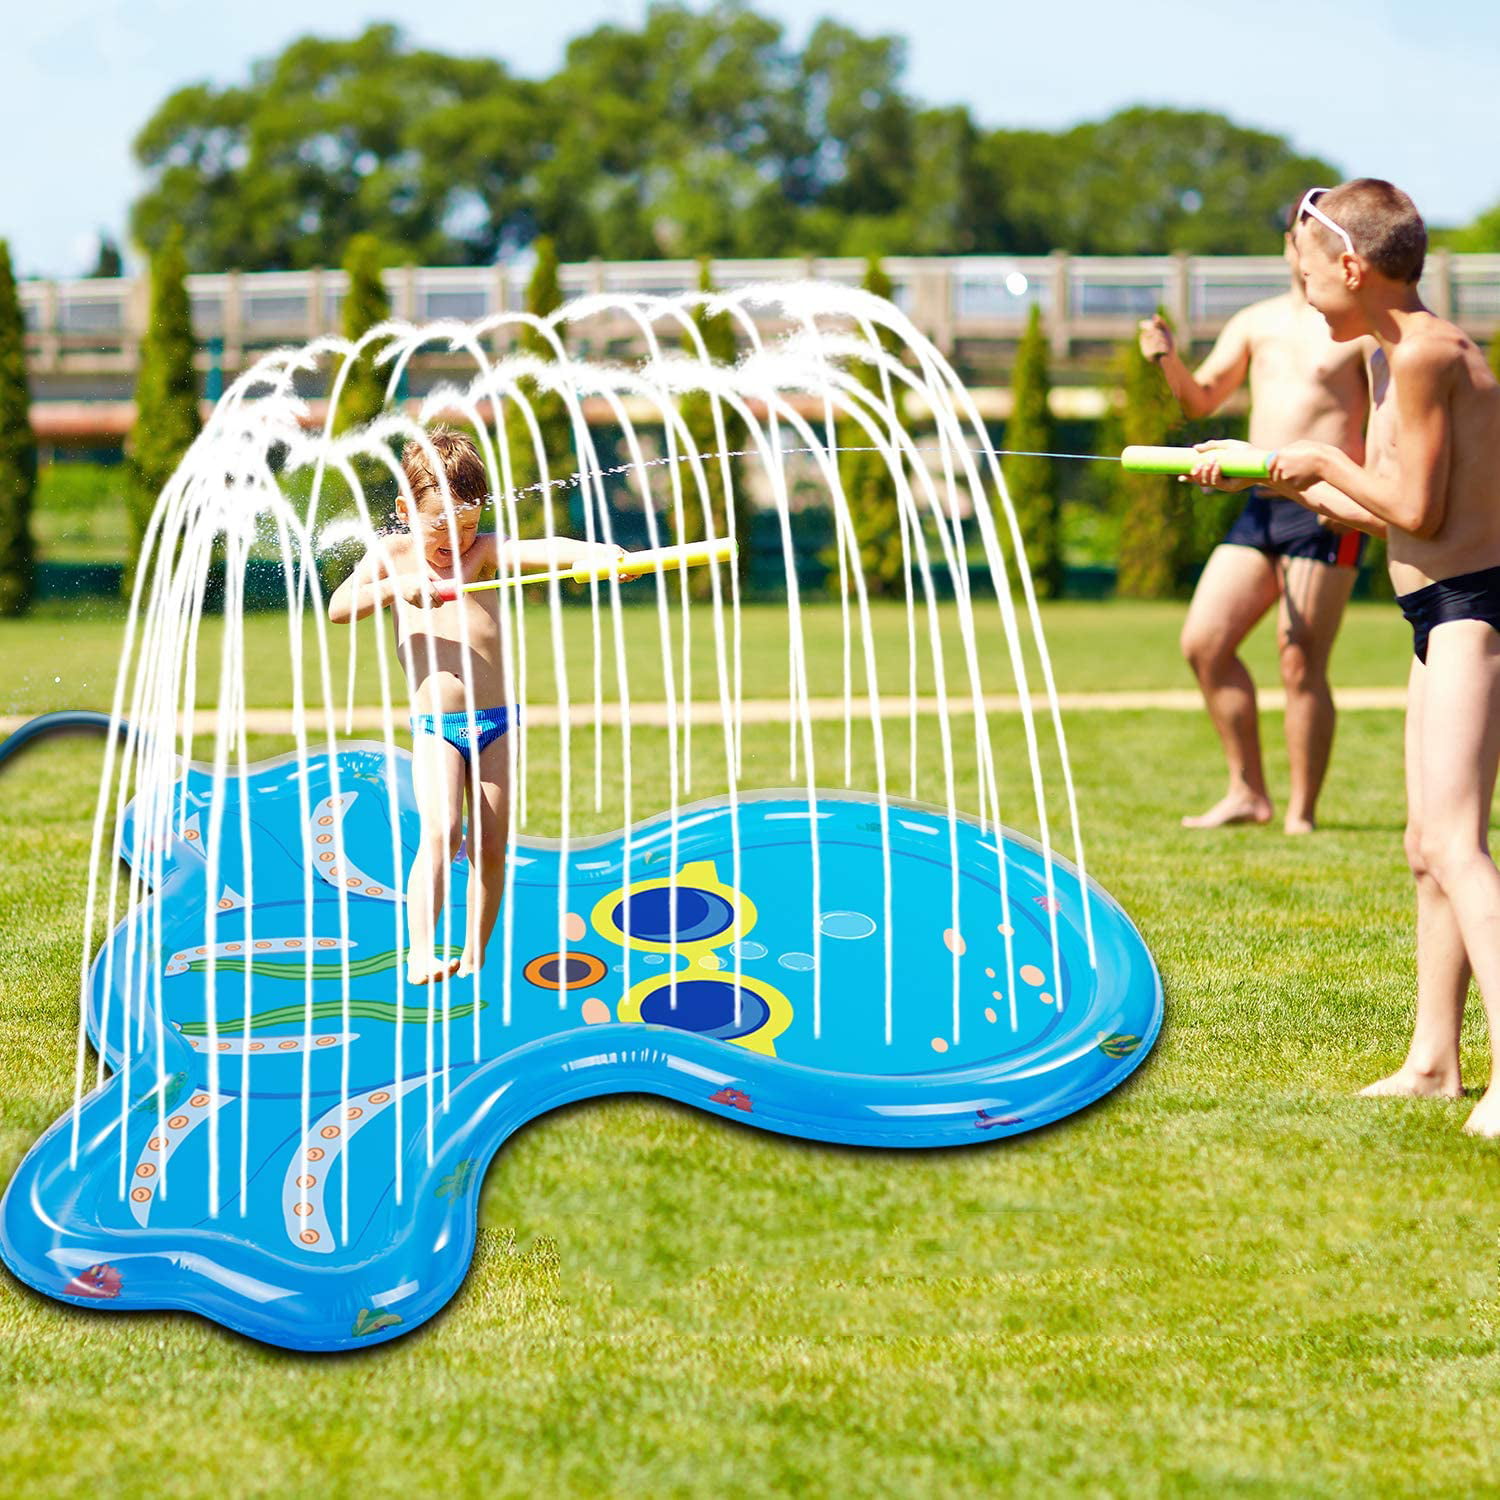 Details about   Sprinkle  Splash Play Mat 68" Water Sprinkler Kiddie Outdoor Outside Water P 